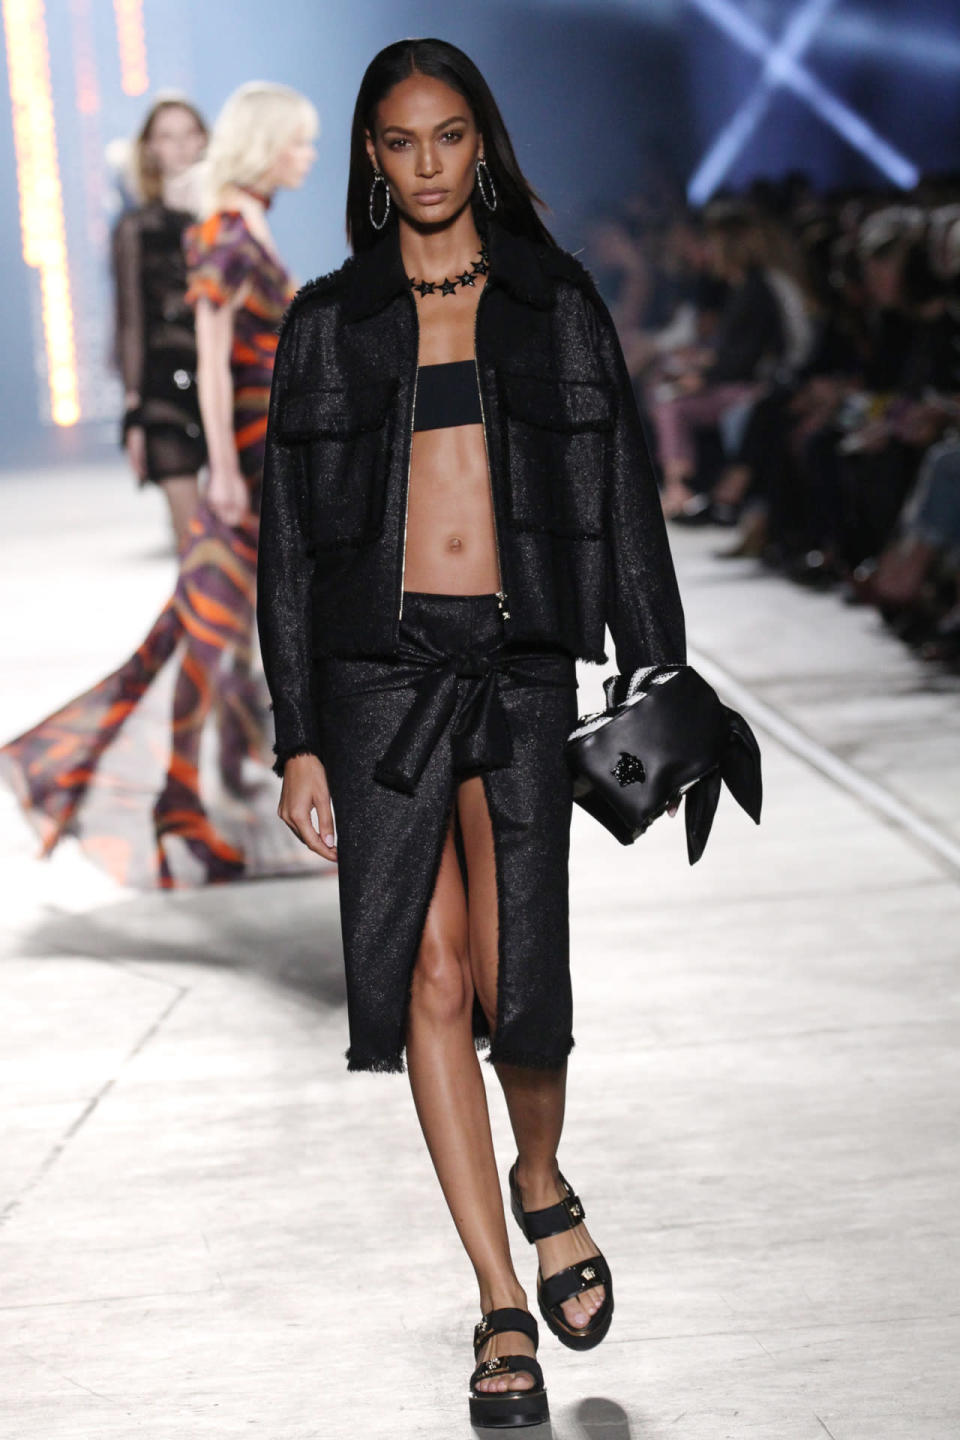 Joan Smalls walks in Versace’s spring 2016 runway show.